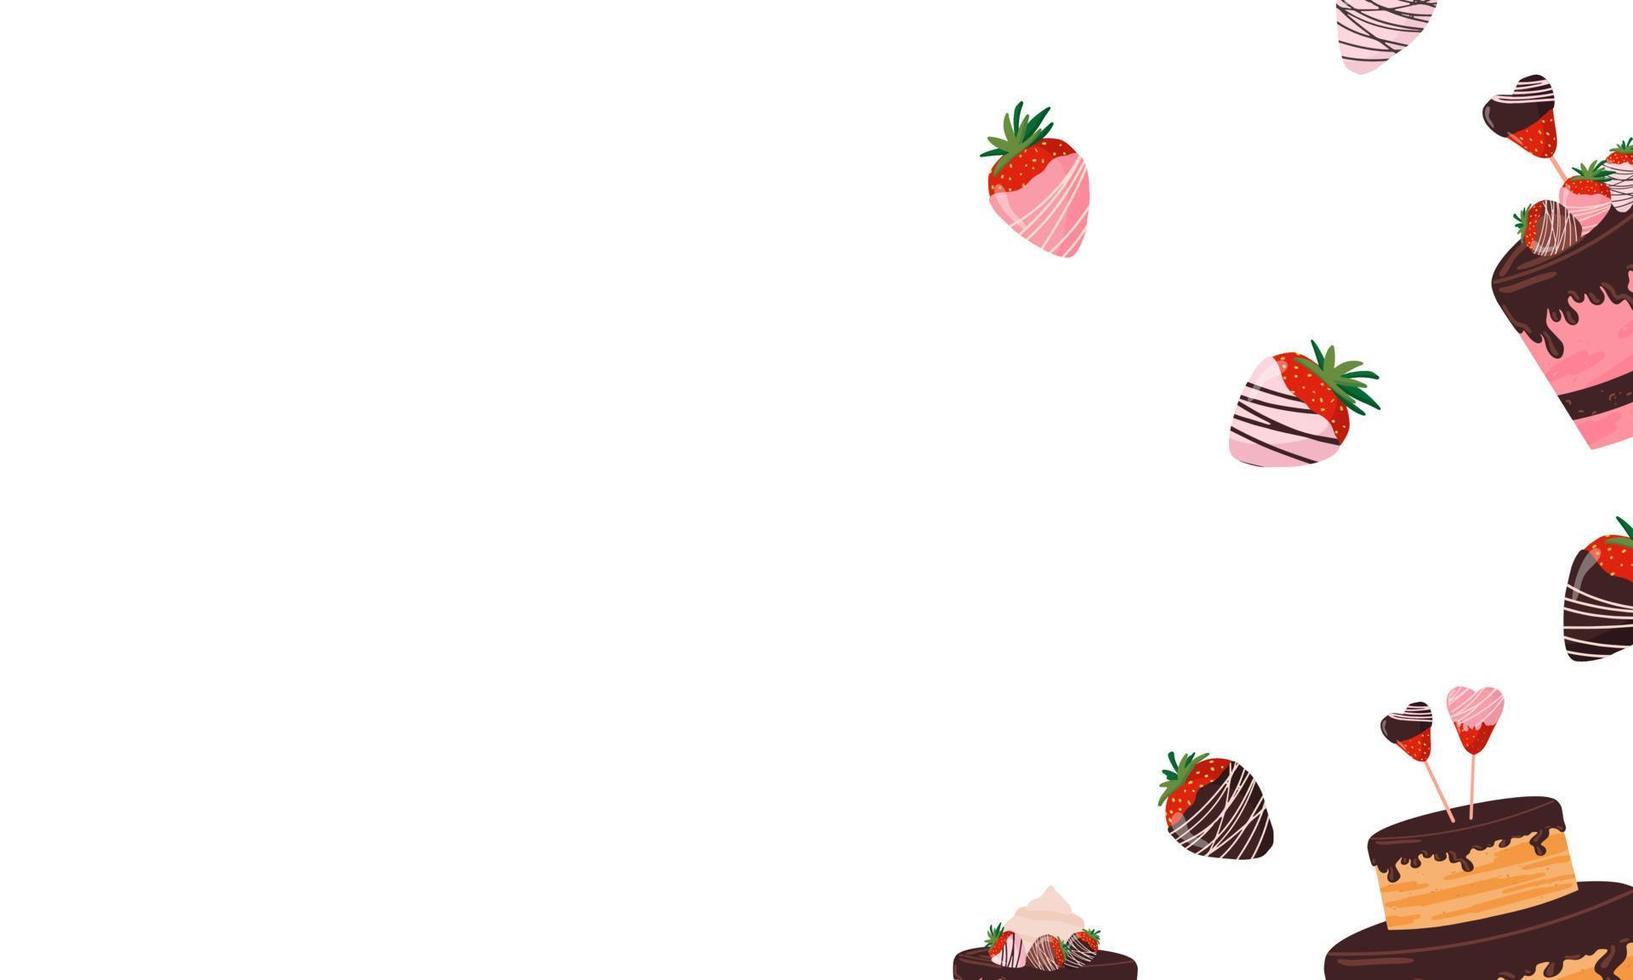 schöner hintergrund, banner mit süßwaren, kuchen, erdbeeren mit schokolade, verschiedene süßigkeiten vektor